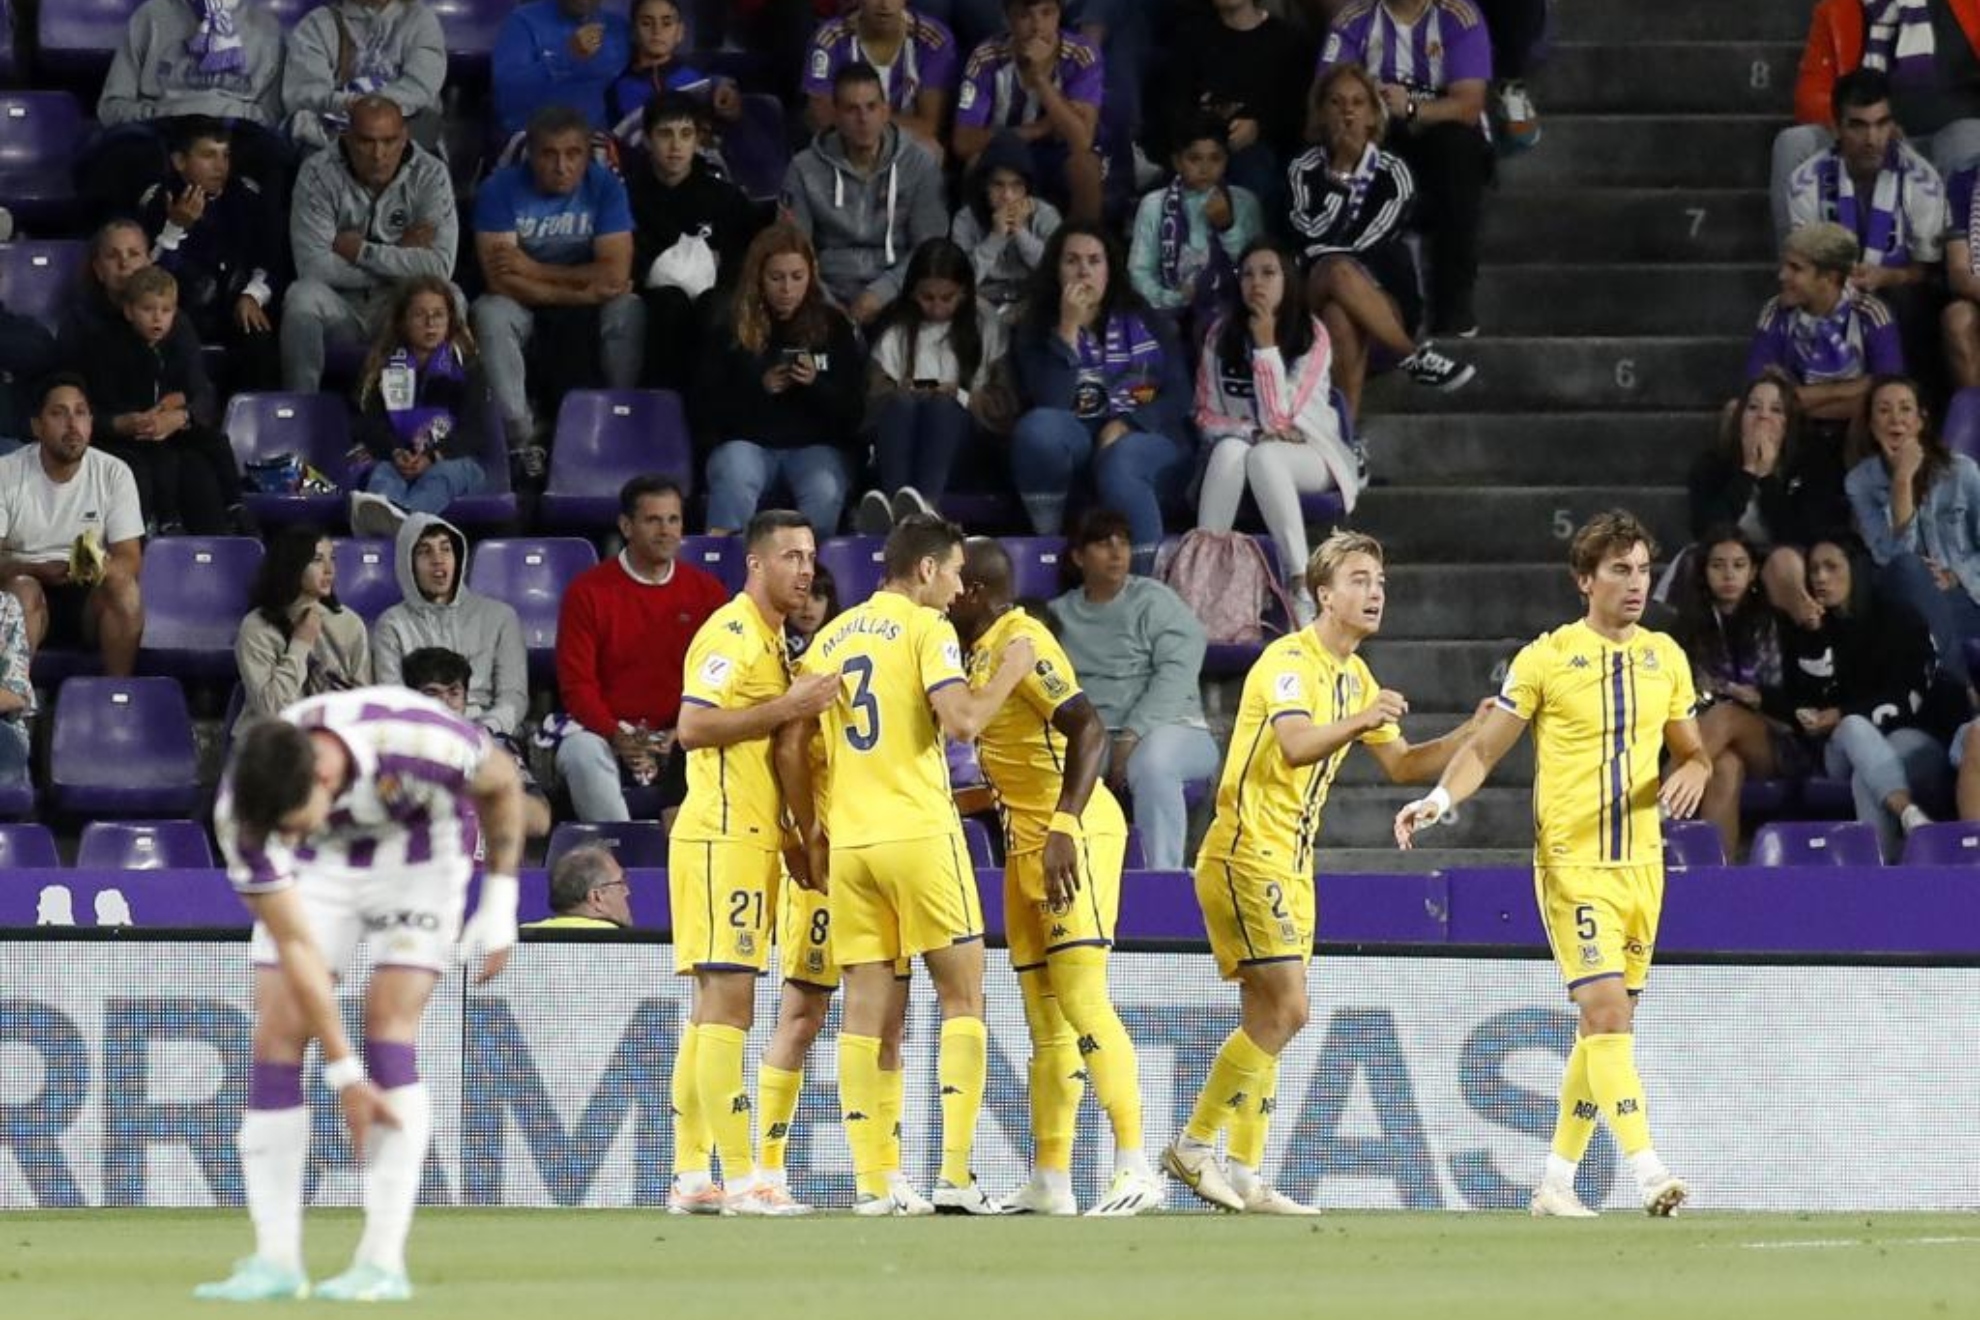 Los jugadores el Alcorcón celebran el gol ante la desesperación de los del Pucela.